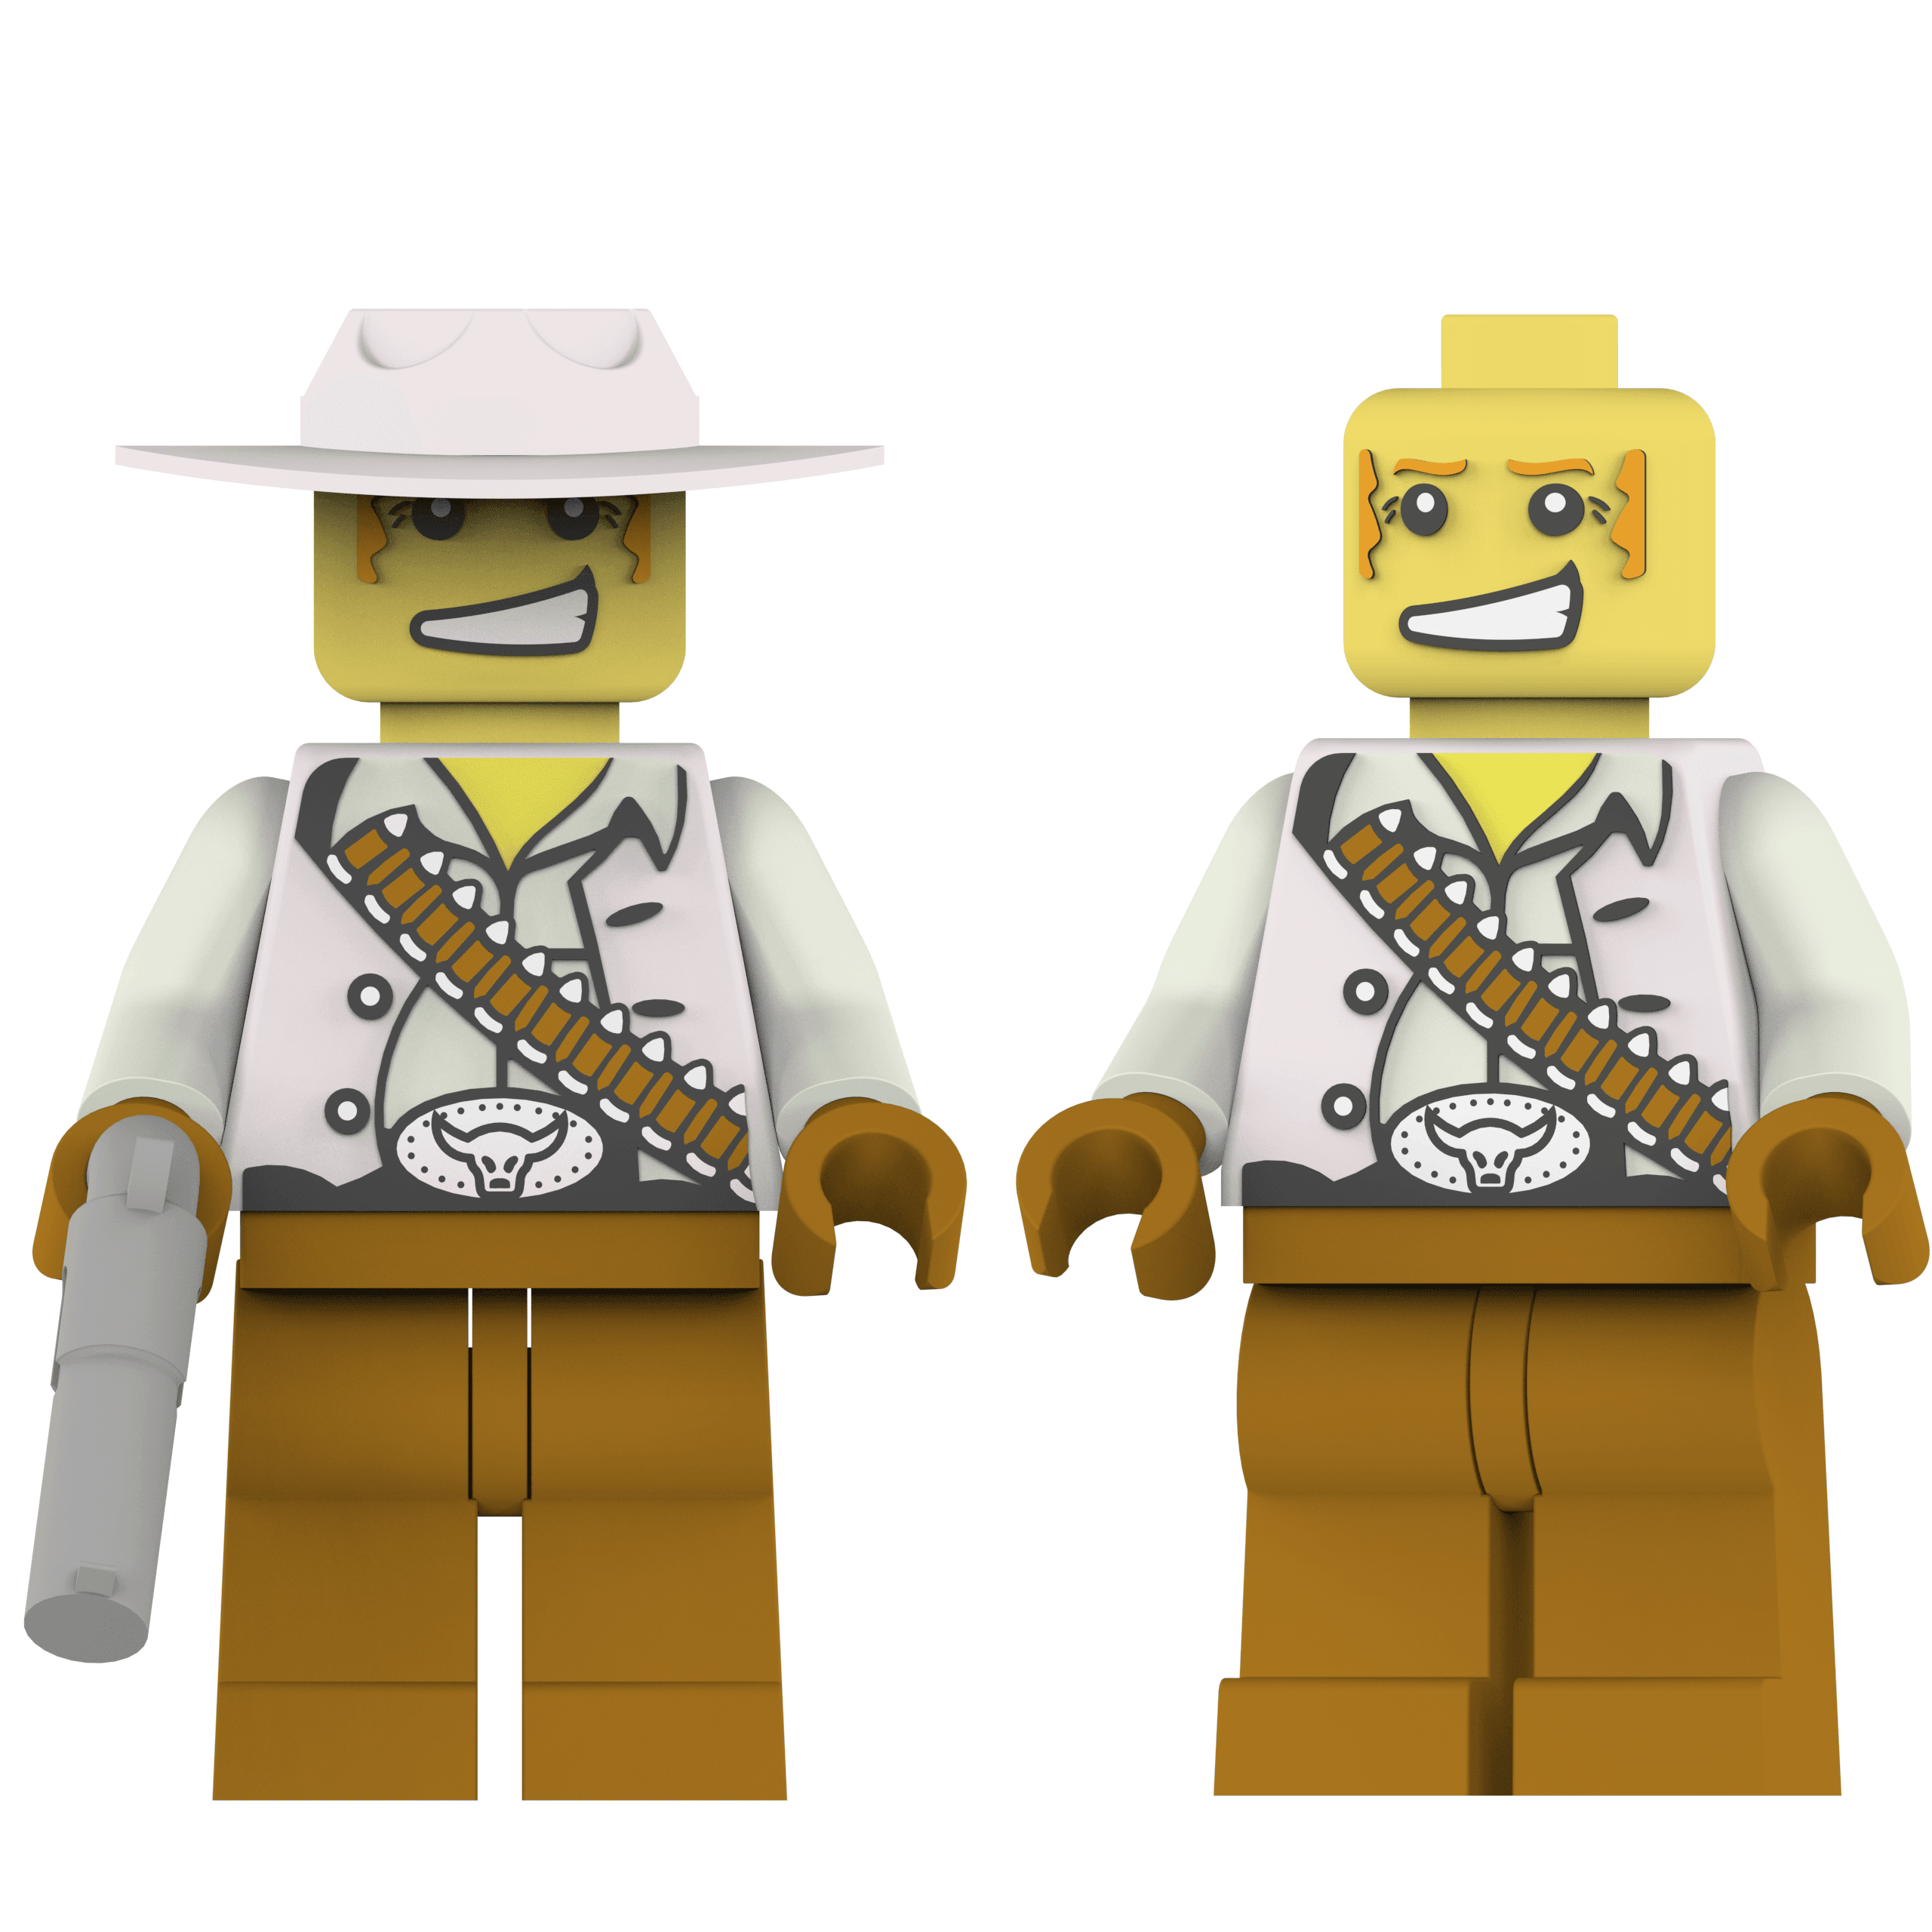 Cowboy Lego 3d model